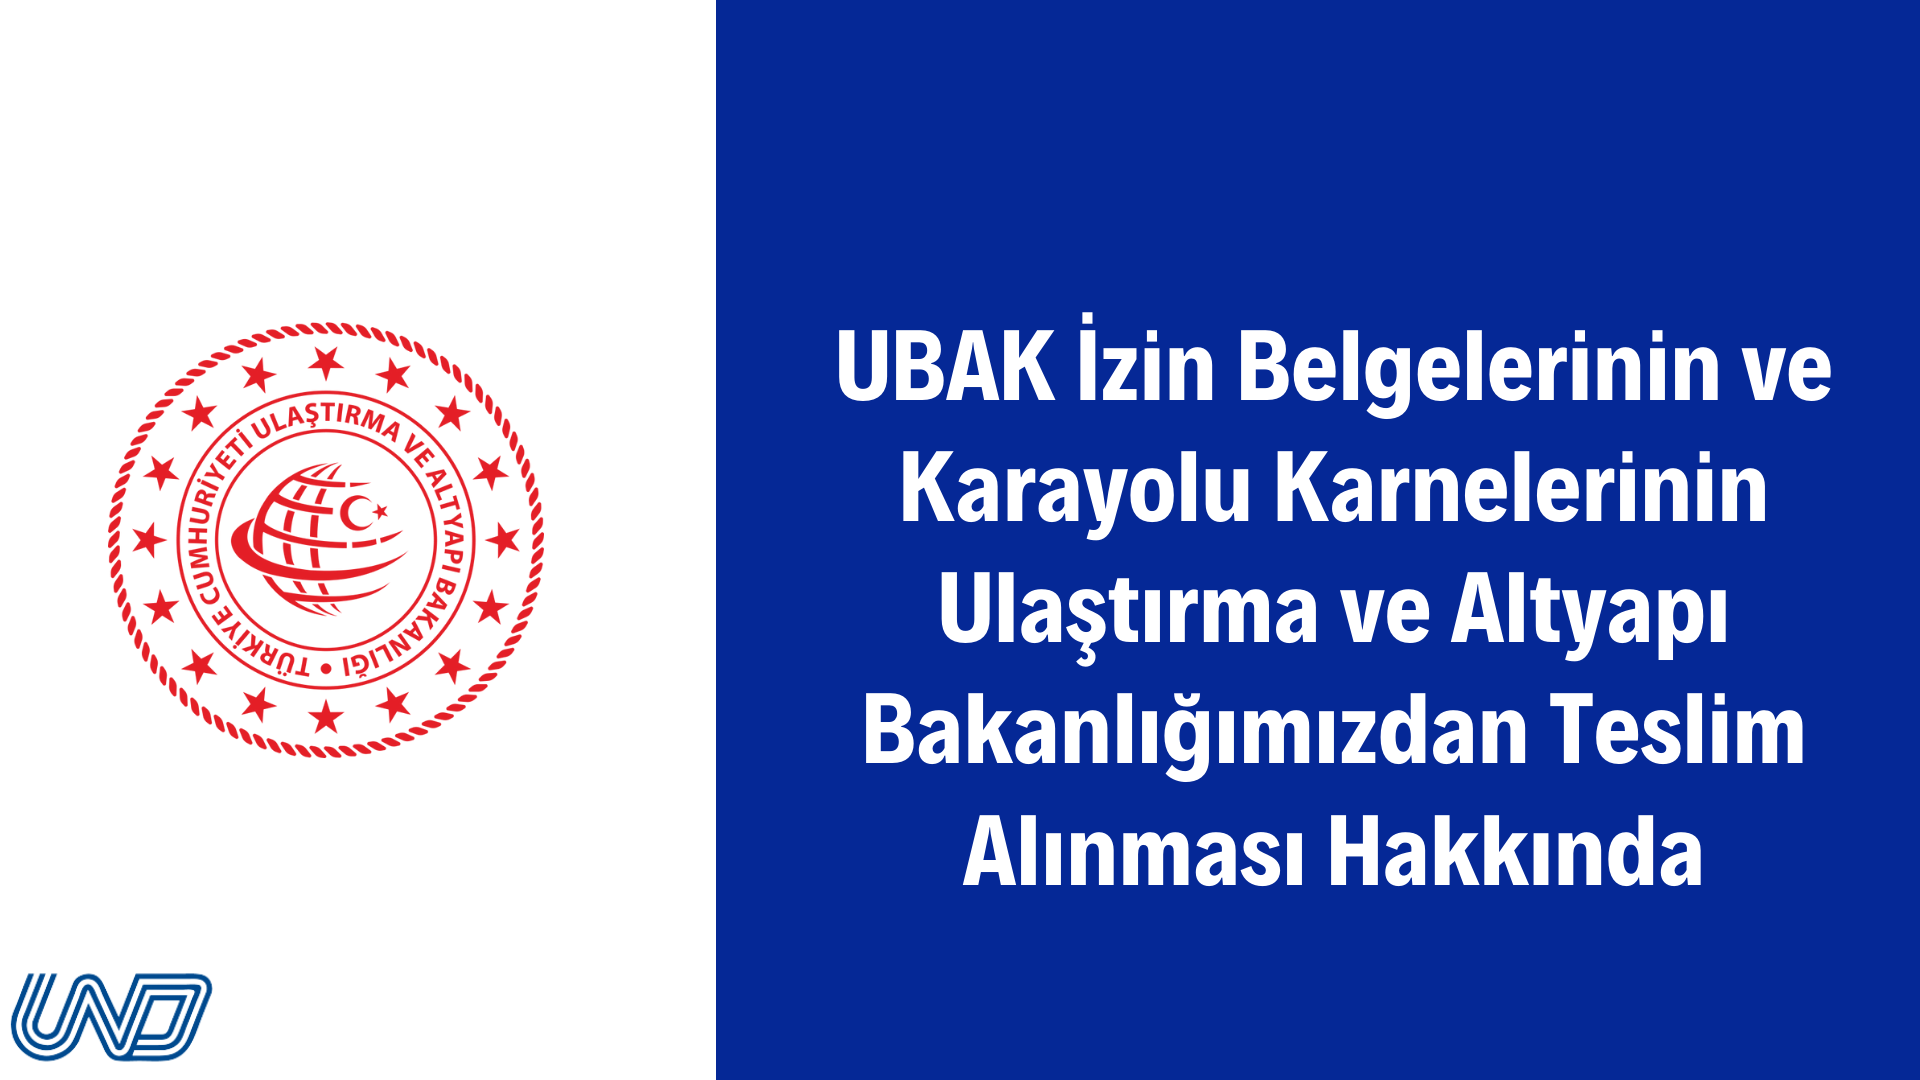 UBAK İzin Belgelerinin ve Karayolu Karnelerinin Ulaştırma ve Altyapı Bakanlığımızdan Teslim Alınması Hakkında